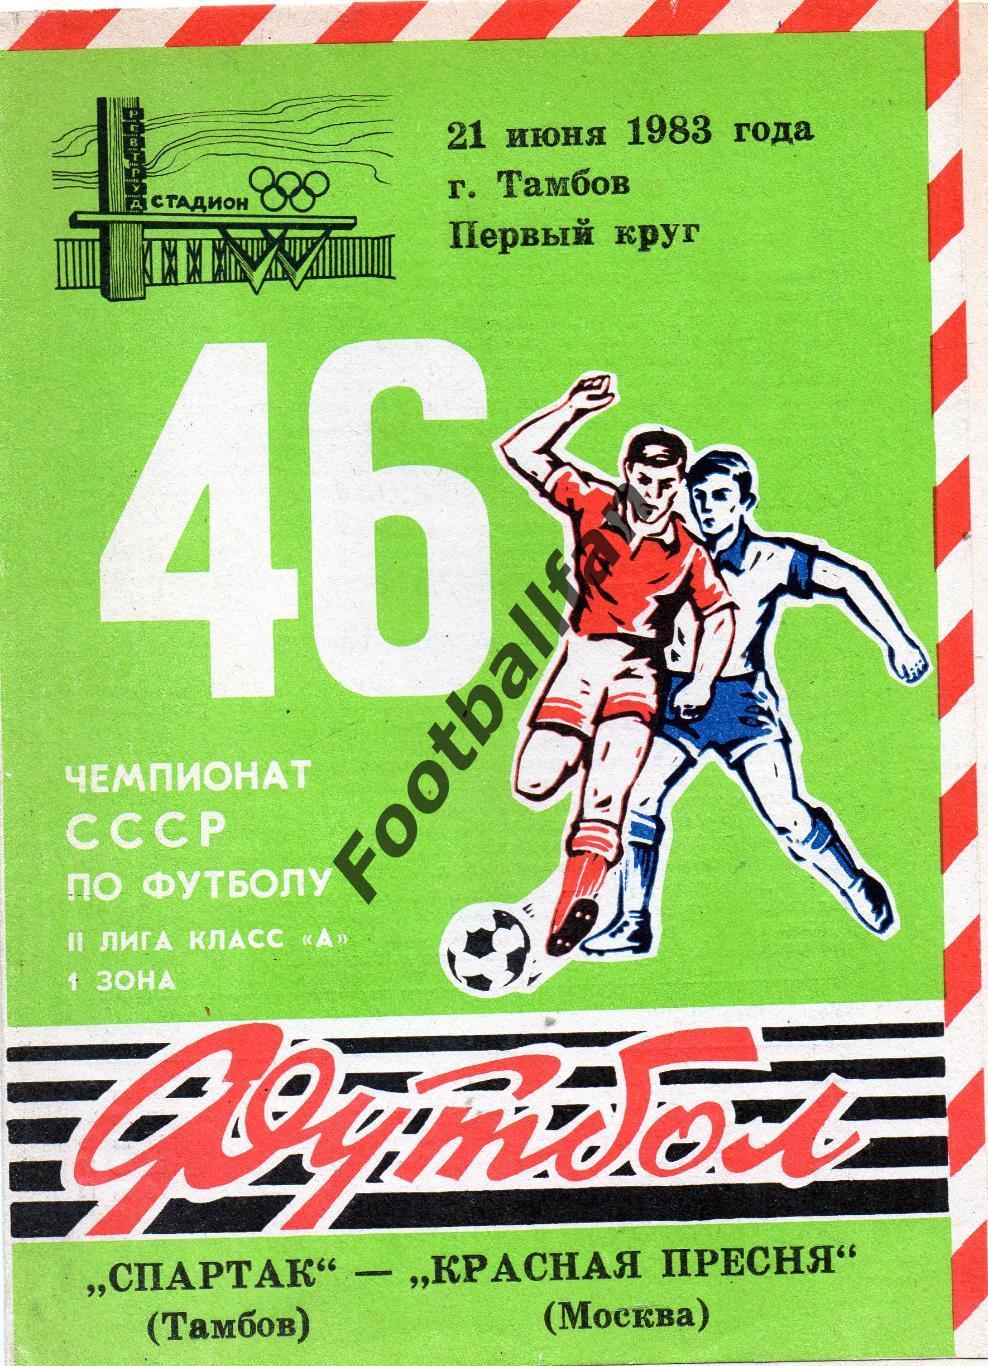 Спартак Тамбов - Красная Пресня Москва 21.06.1983